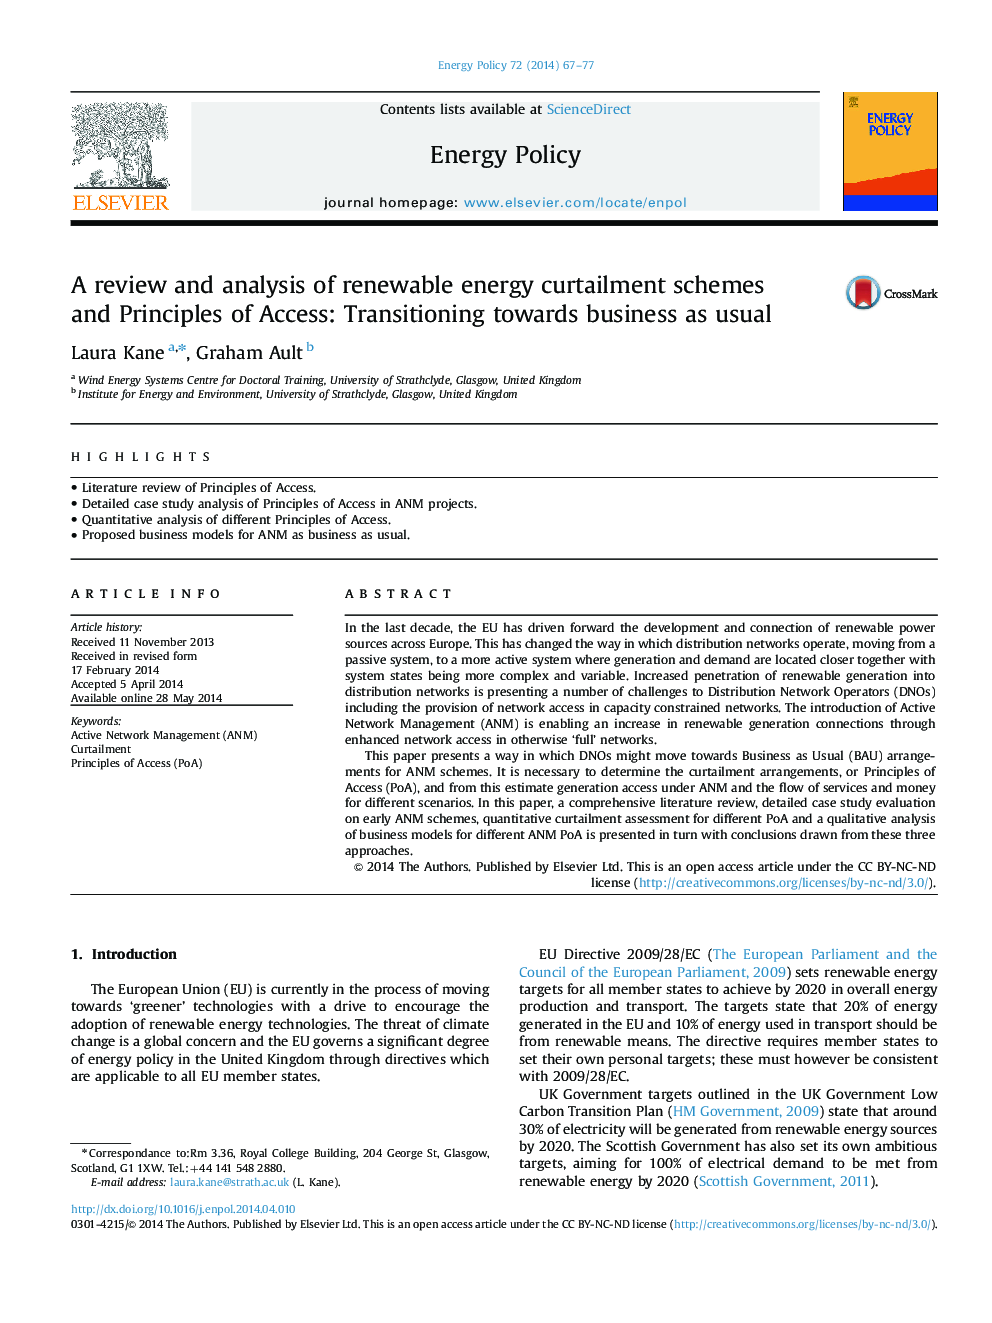 بررسی و تجزیه و تحلیل طرح های محدود کننده انرژی تجدید پذیر و اصول دسترسی: انتقال به سمت تجارت به طور معمول 